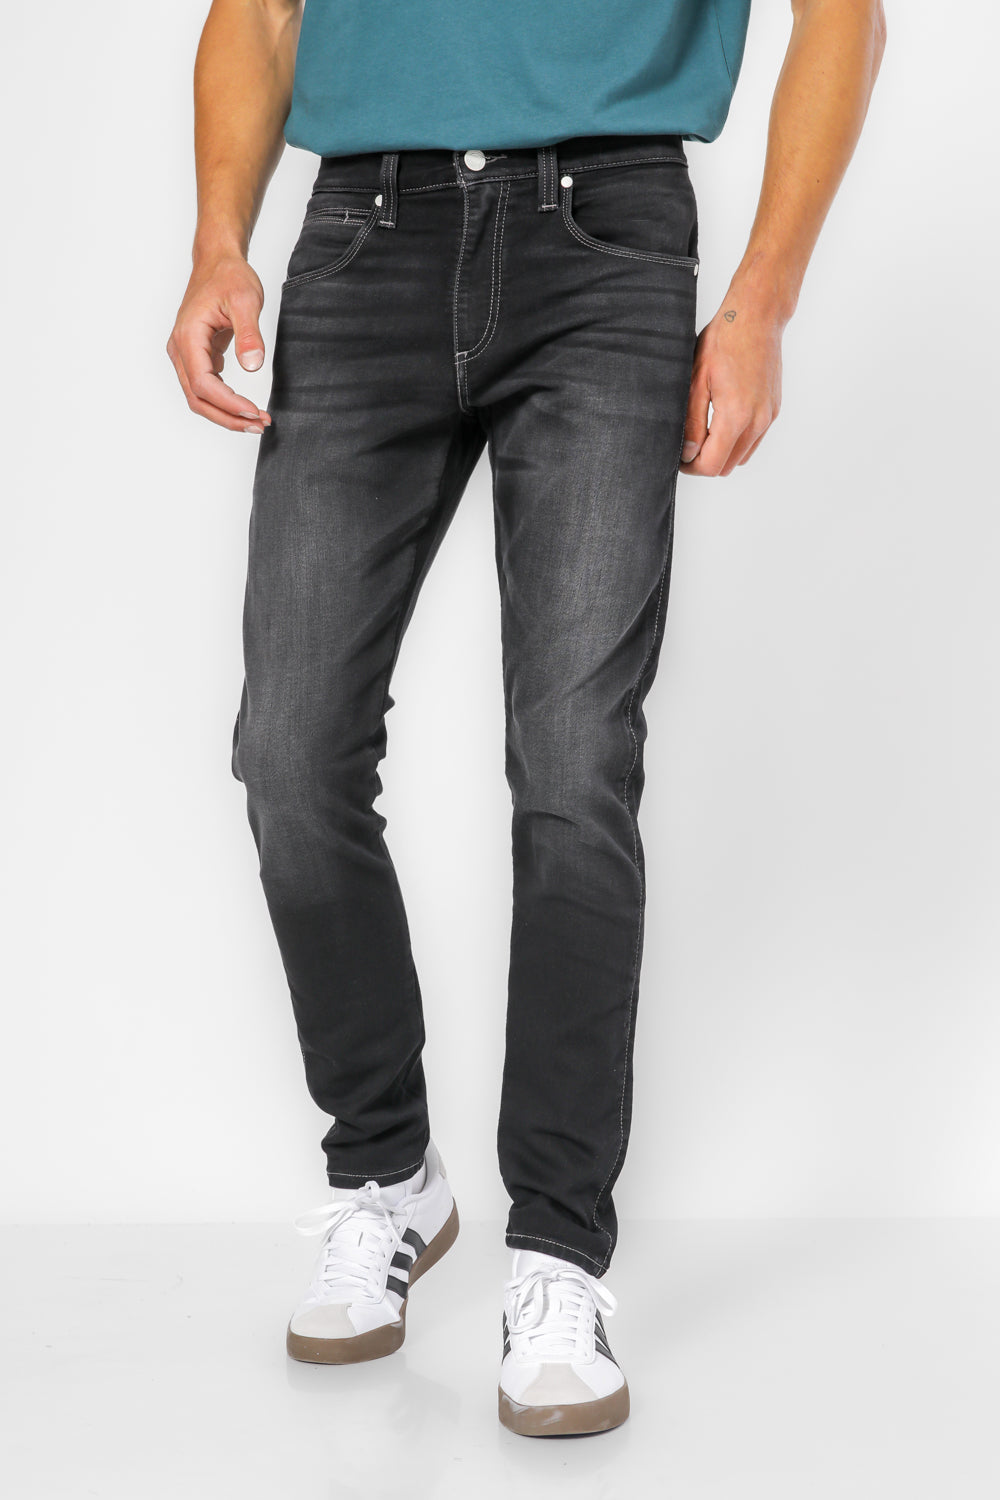 ג'ינס 512 בצבע שחור